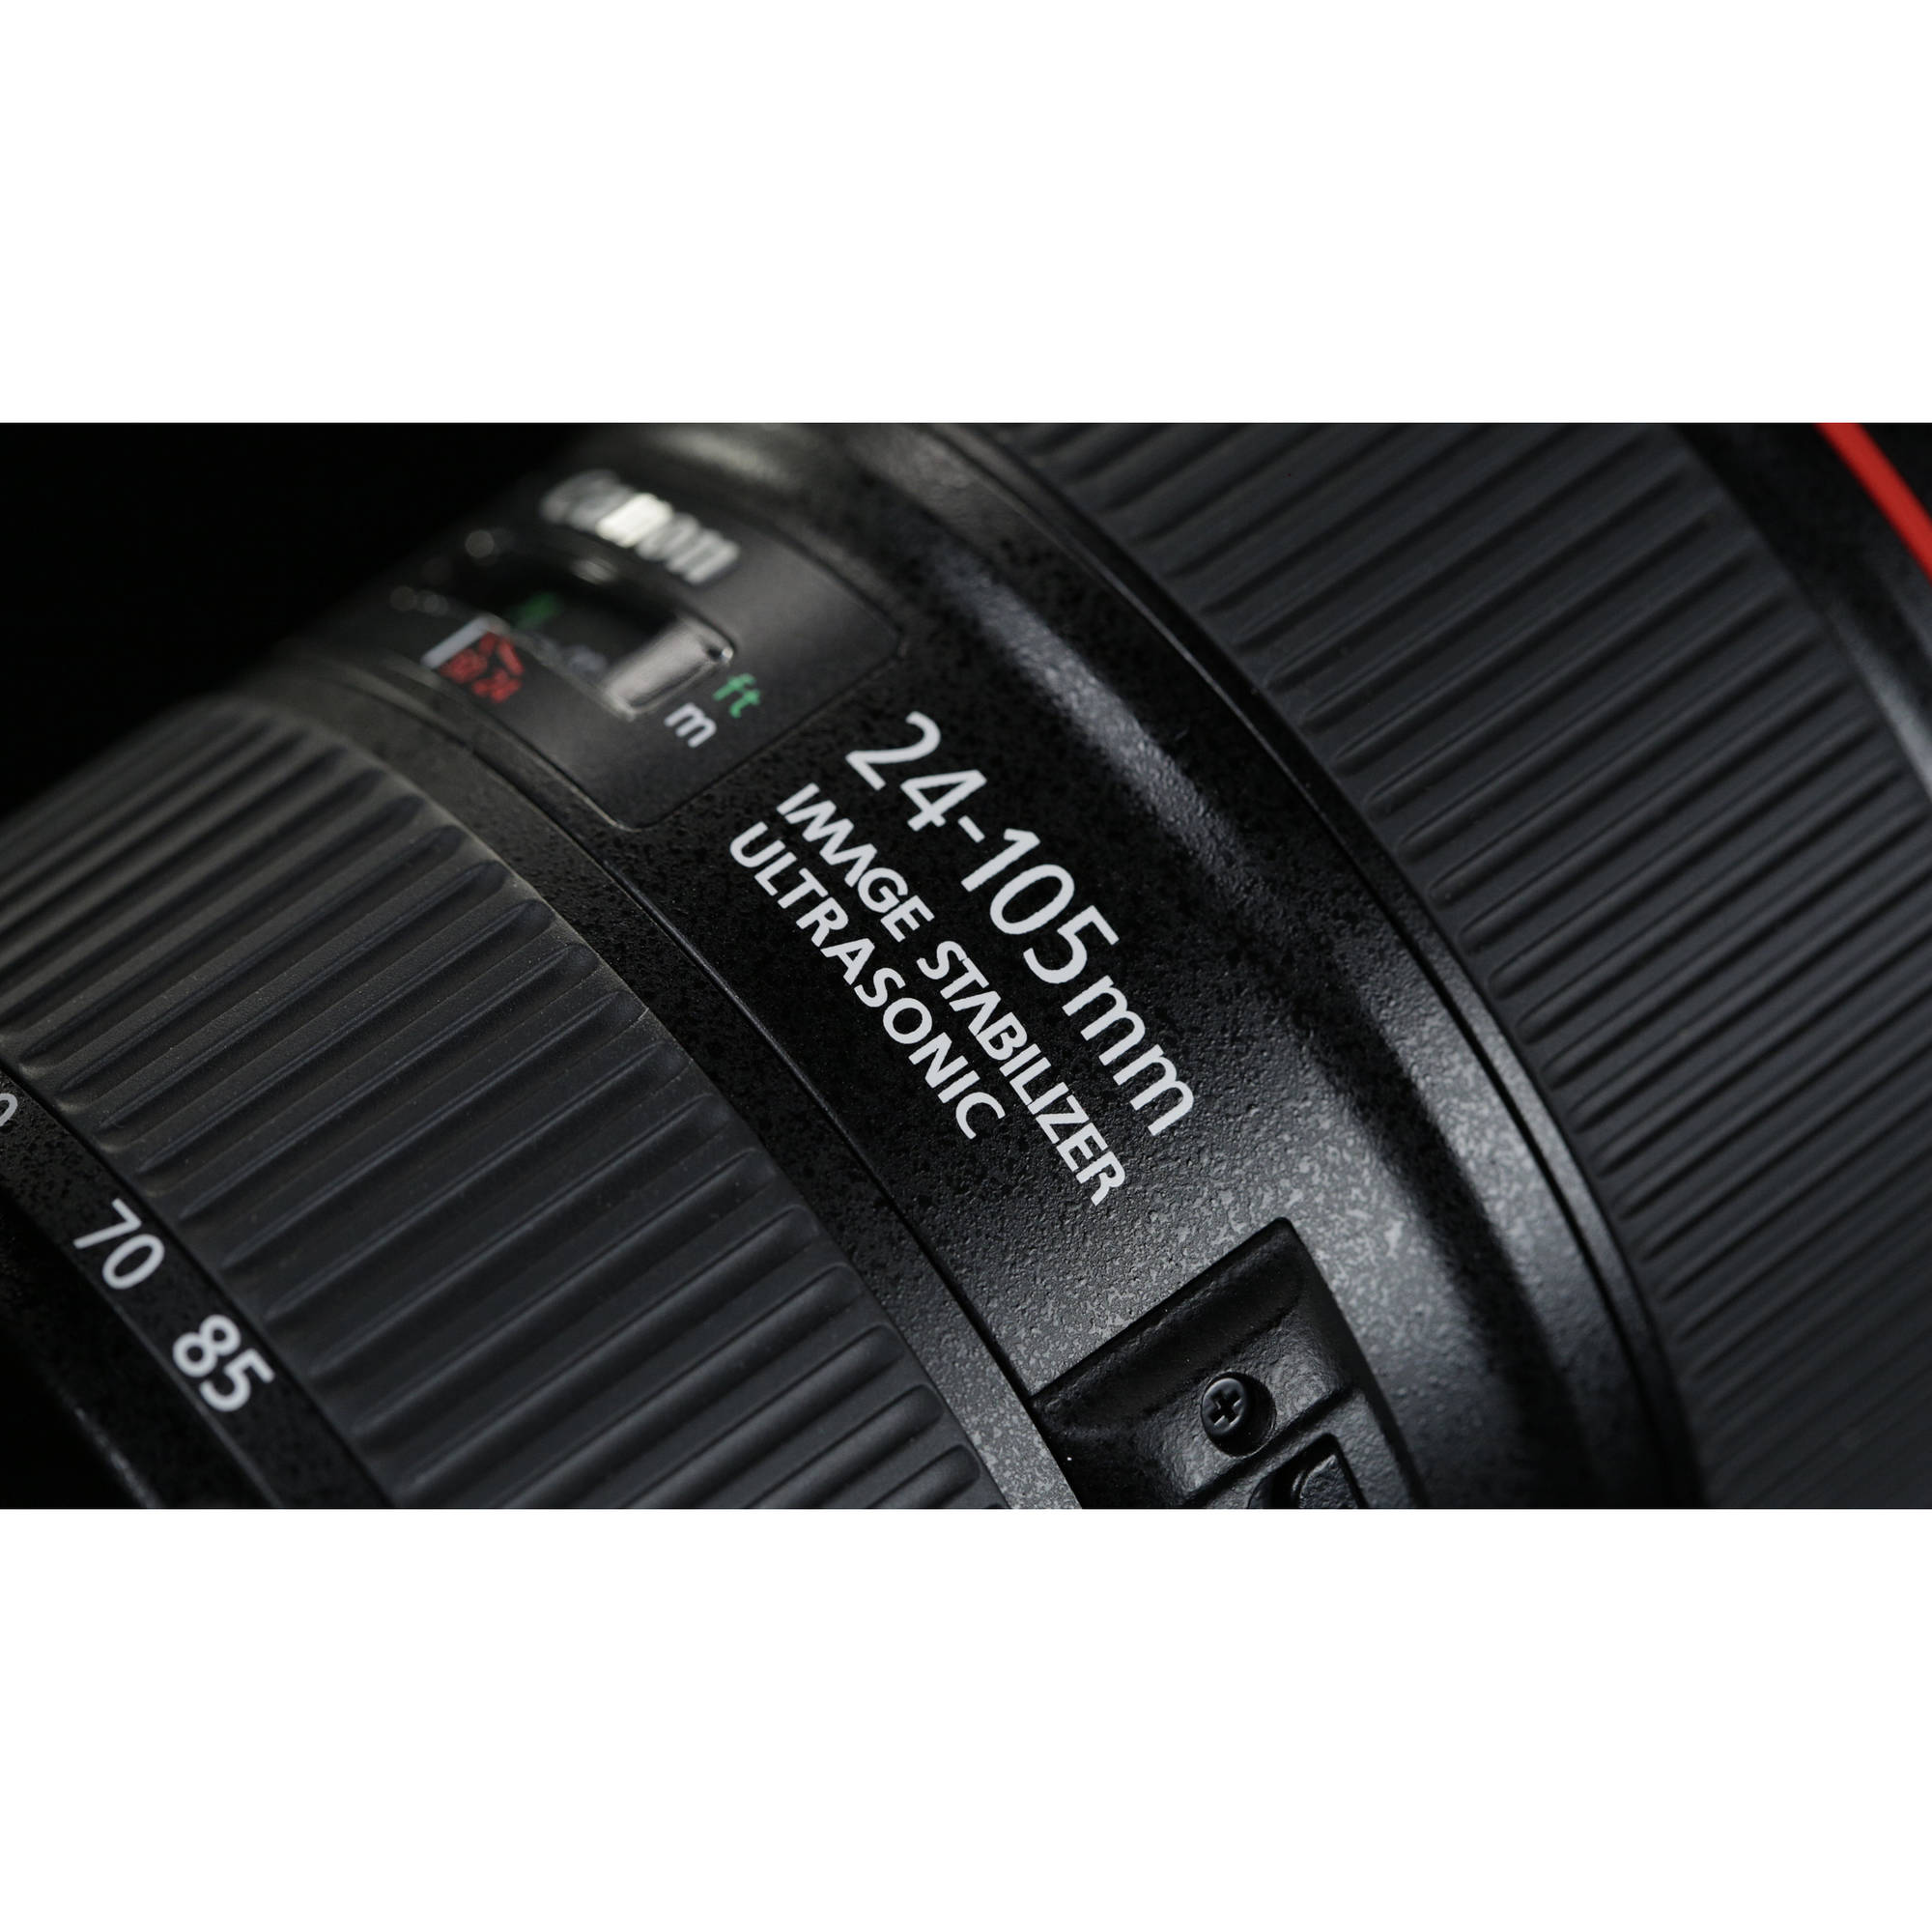 Cámara Canon EOS 5D Mark IV DSLR con lente de 24-105 mm F / 4L II